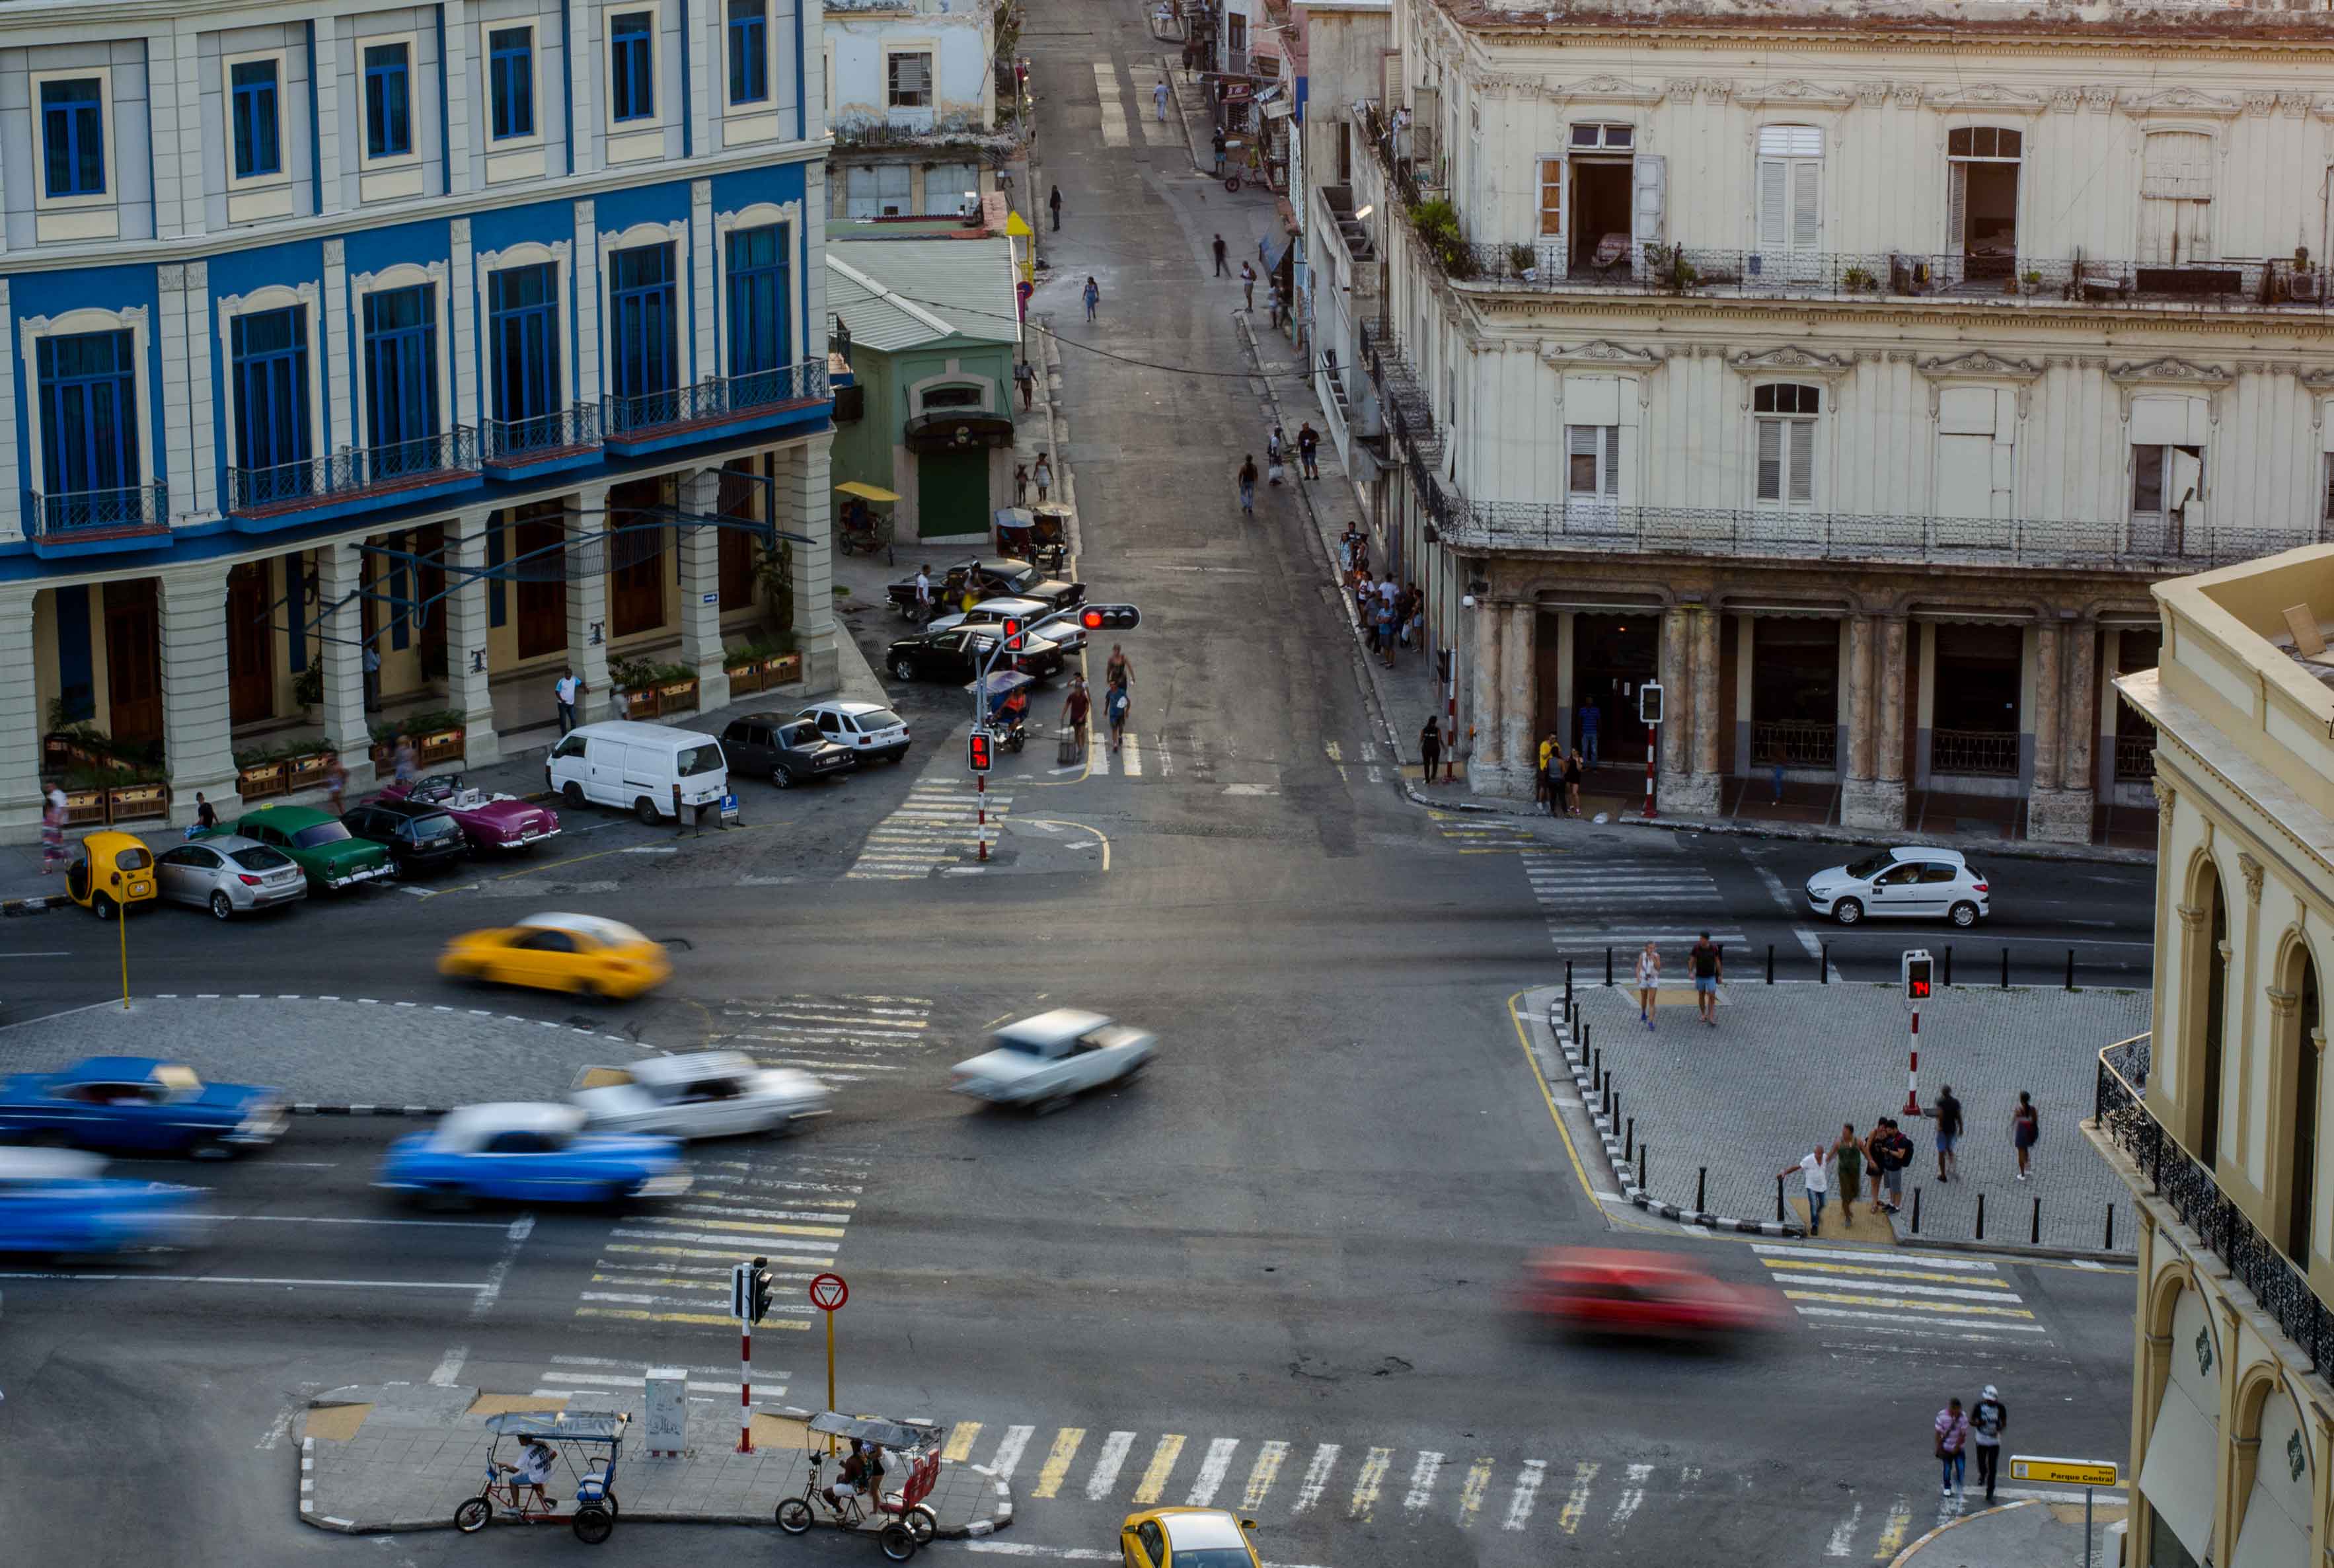 Rue de La Havane